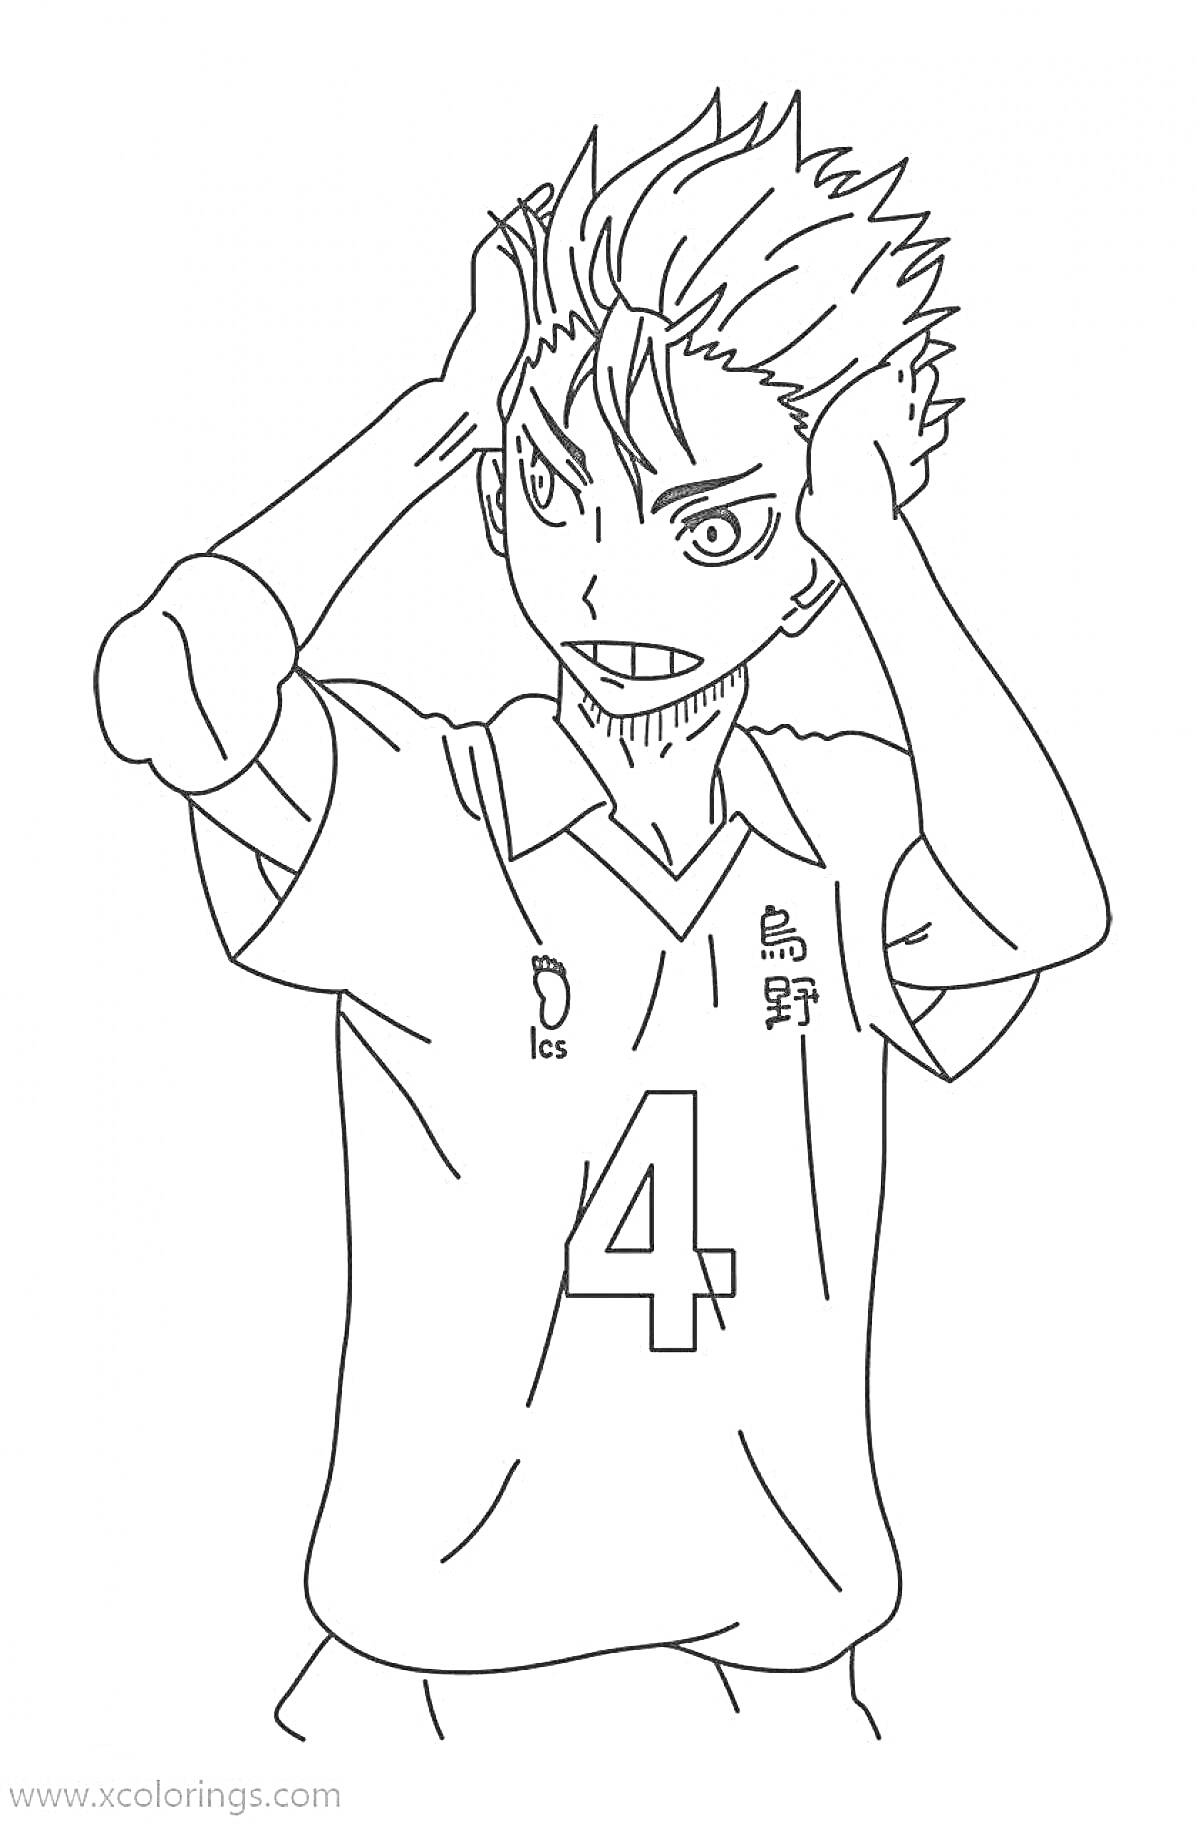 Раскраска Аниме персонаж в волейбольной форме с номером 4 на футболке, руки держит за головой